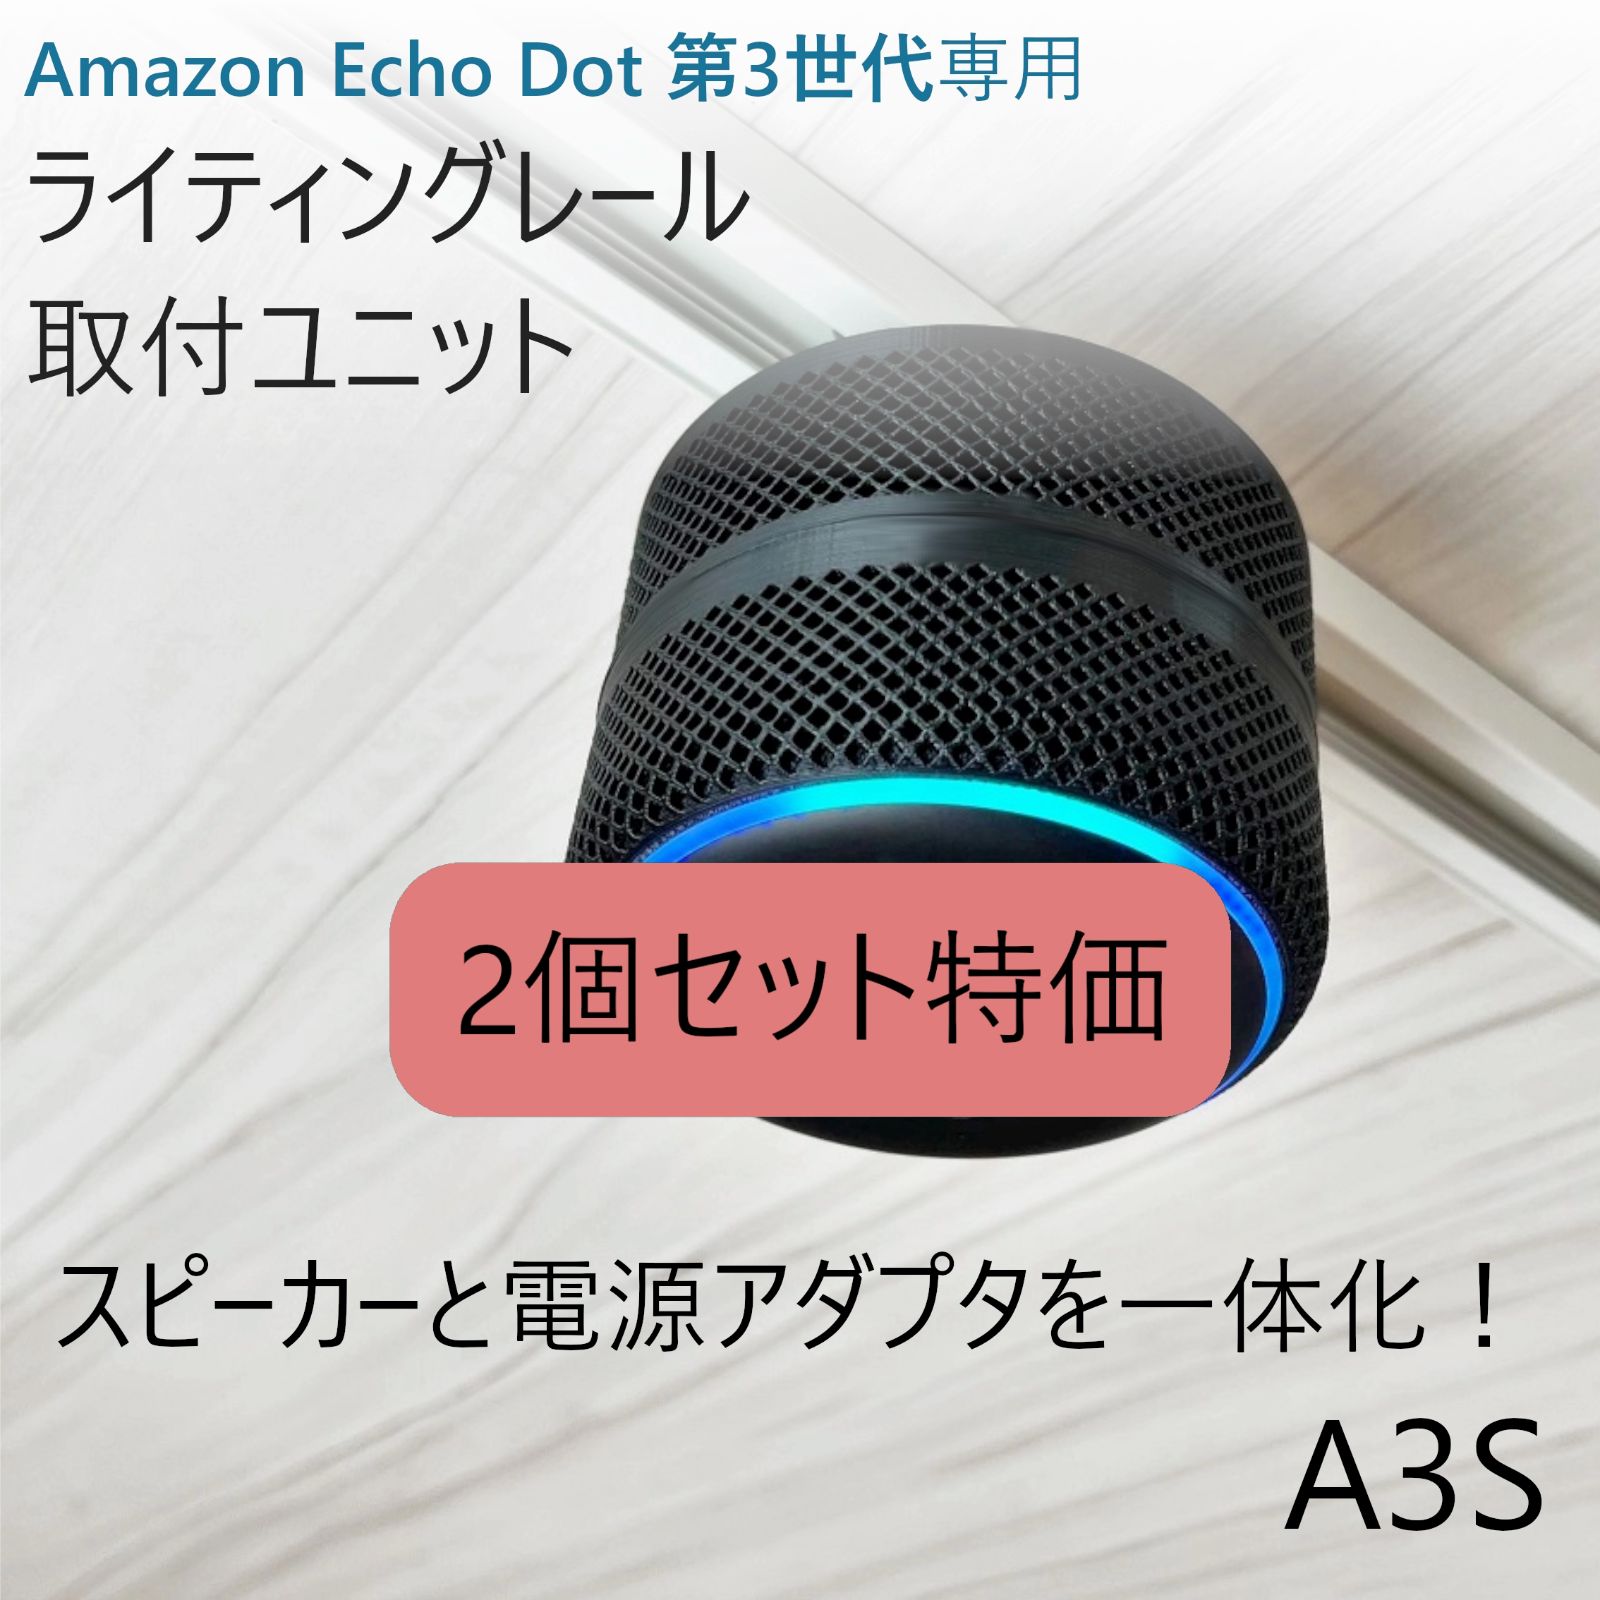 2個セット】Amazon Echo Dot 第3世代 ライティングレール取付ユニット